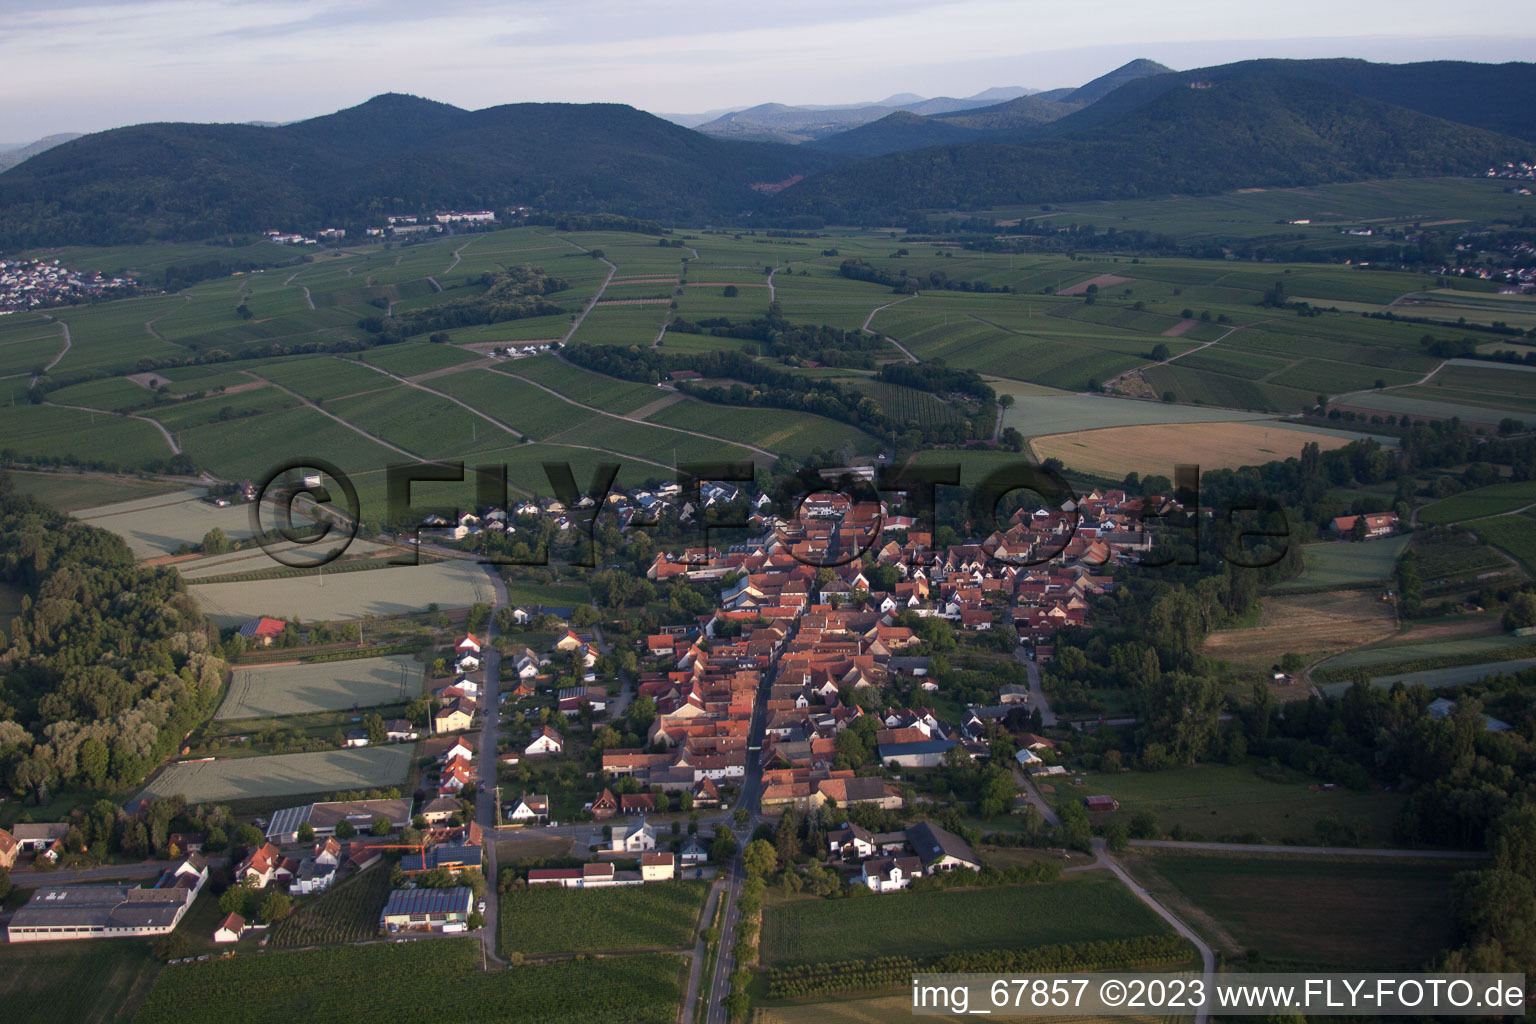 Drone recording of District Heuchelheim in Heuchelheim-Klingen in the state Rhineland-Palatinate, Germany